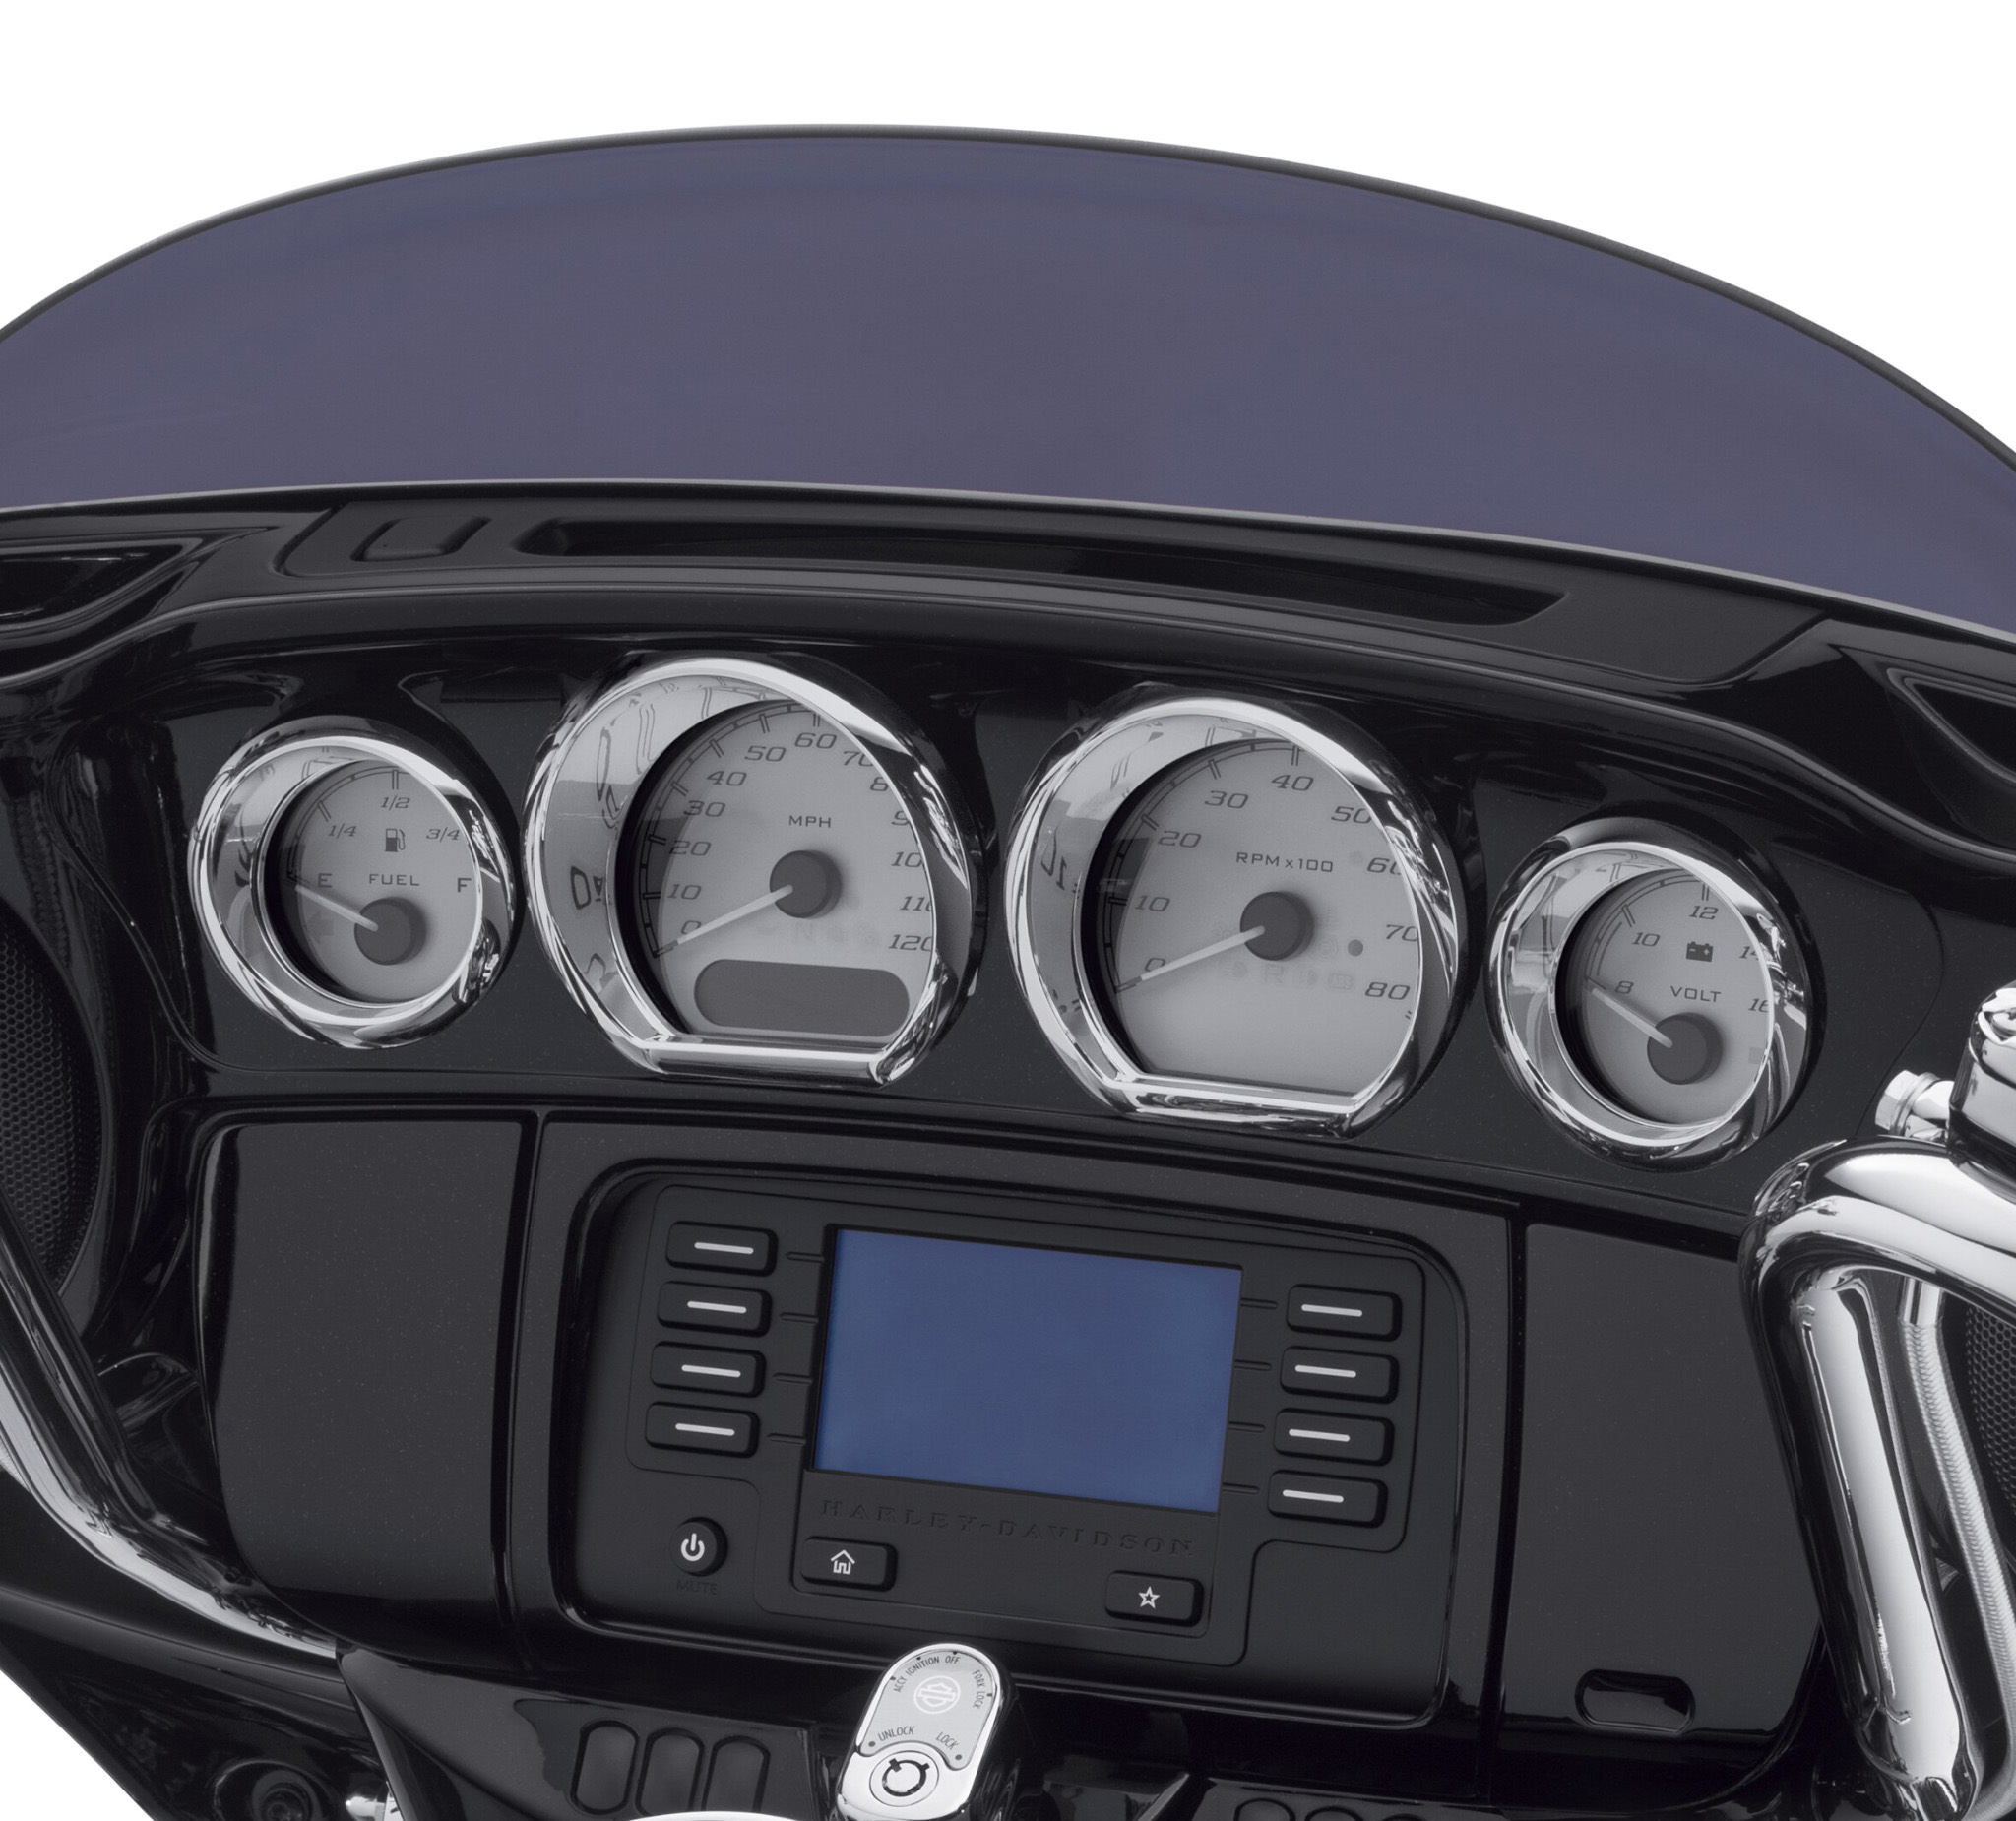 1 Set Chrome Gauge Bezel Trim Mount Plate For Harley Touring Street Glide 14-17